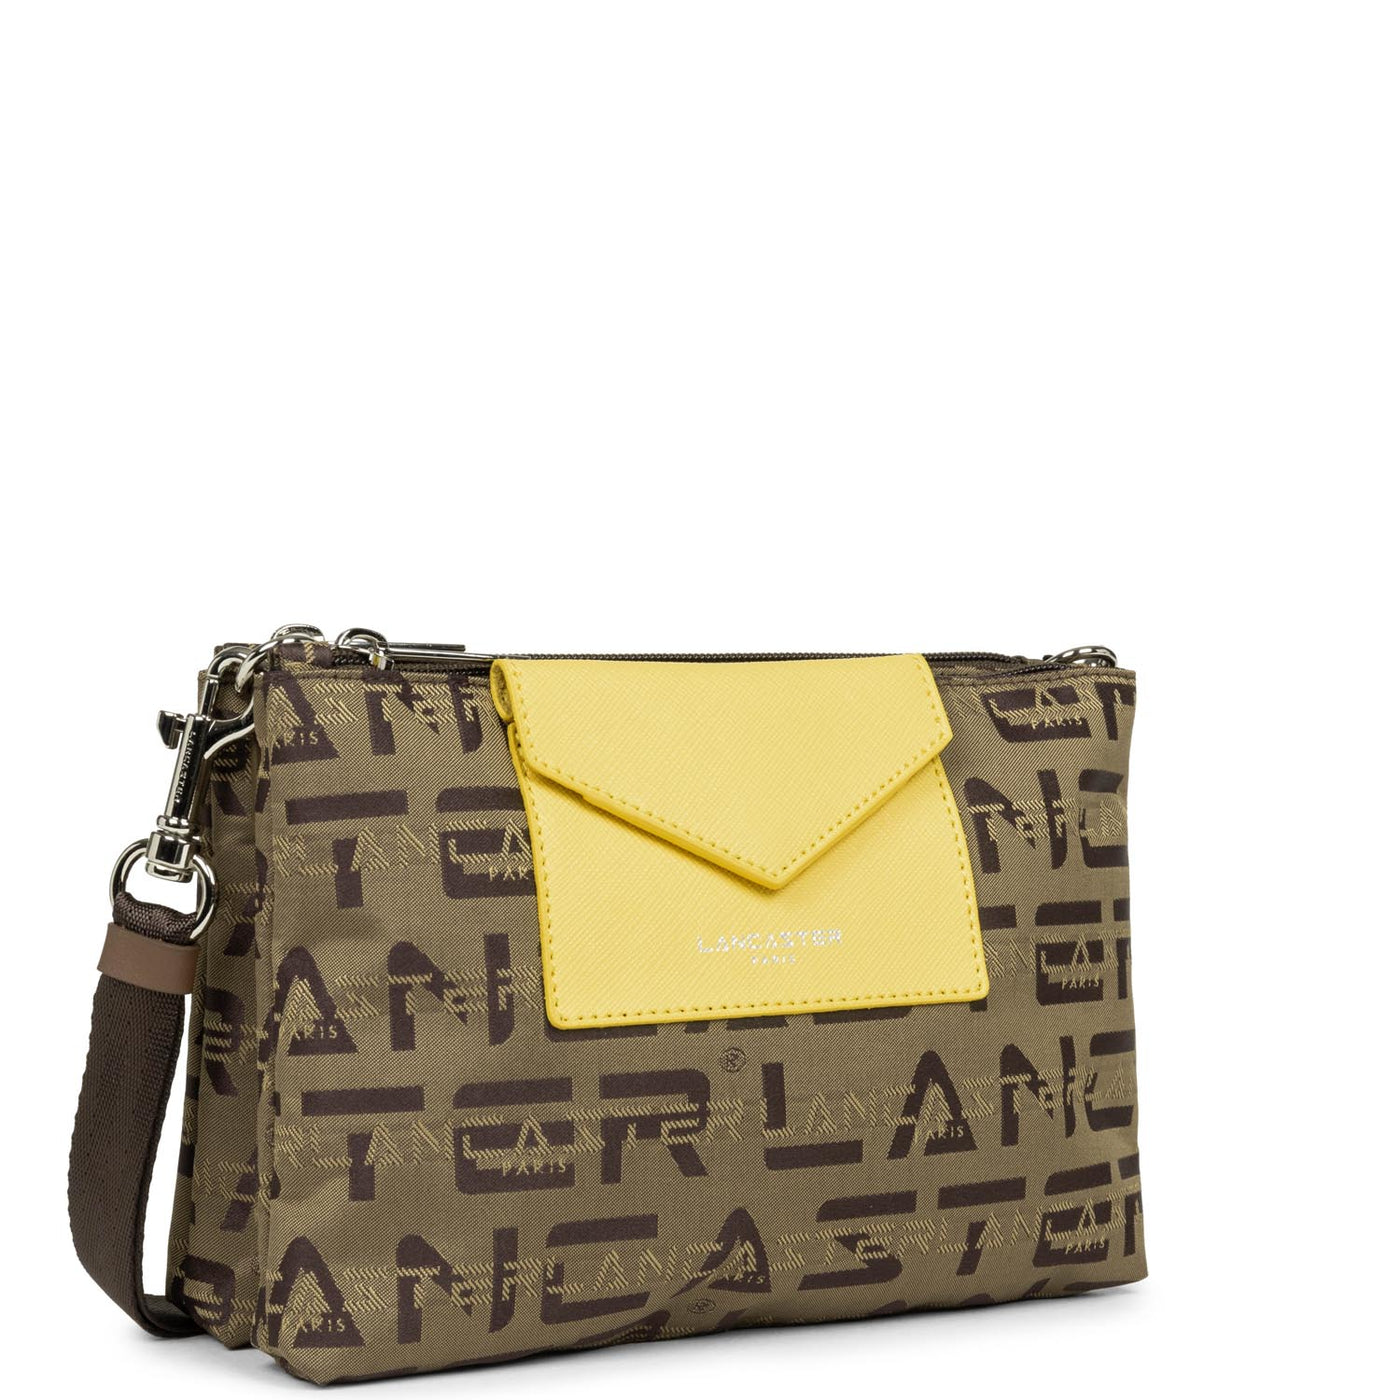 petit sac trotteur - logo kba #couleur_marron-vison-jaune